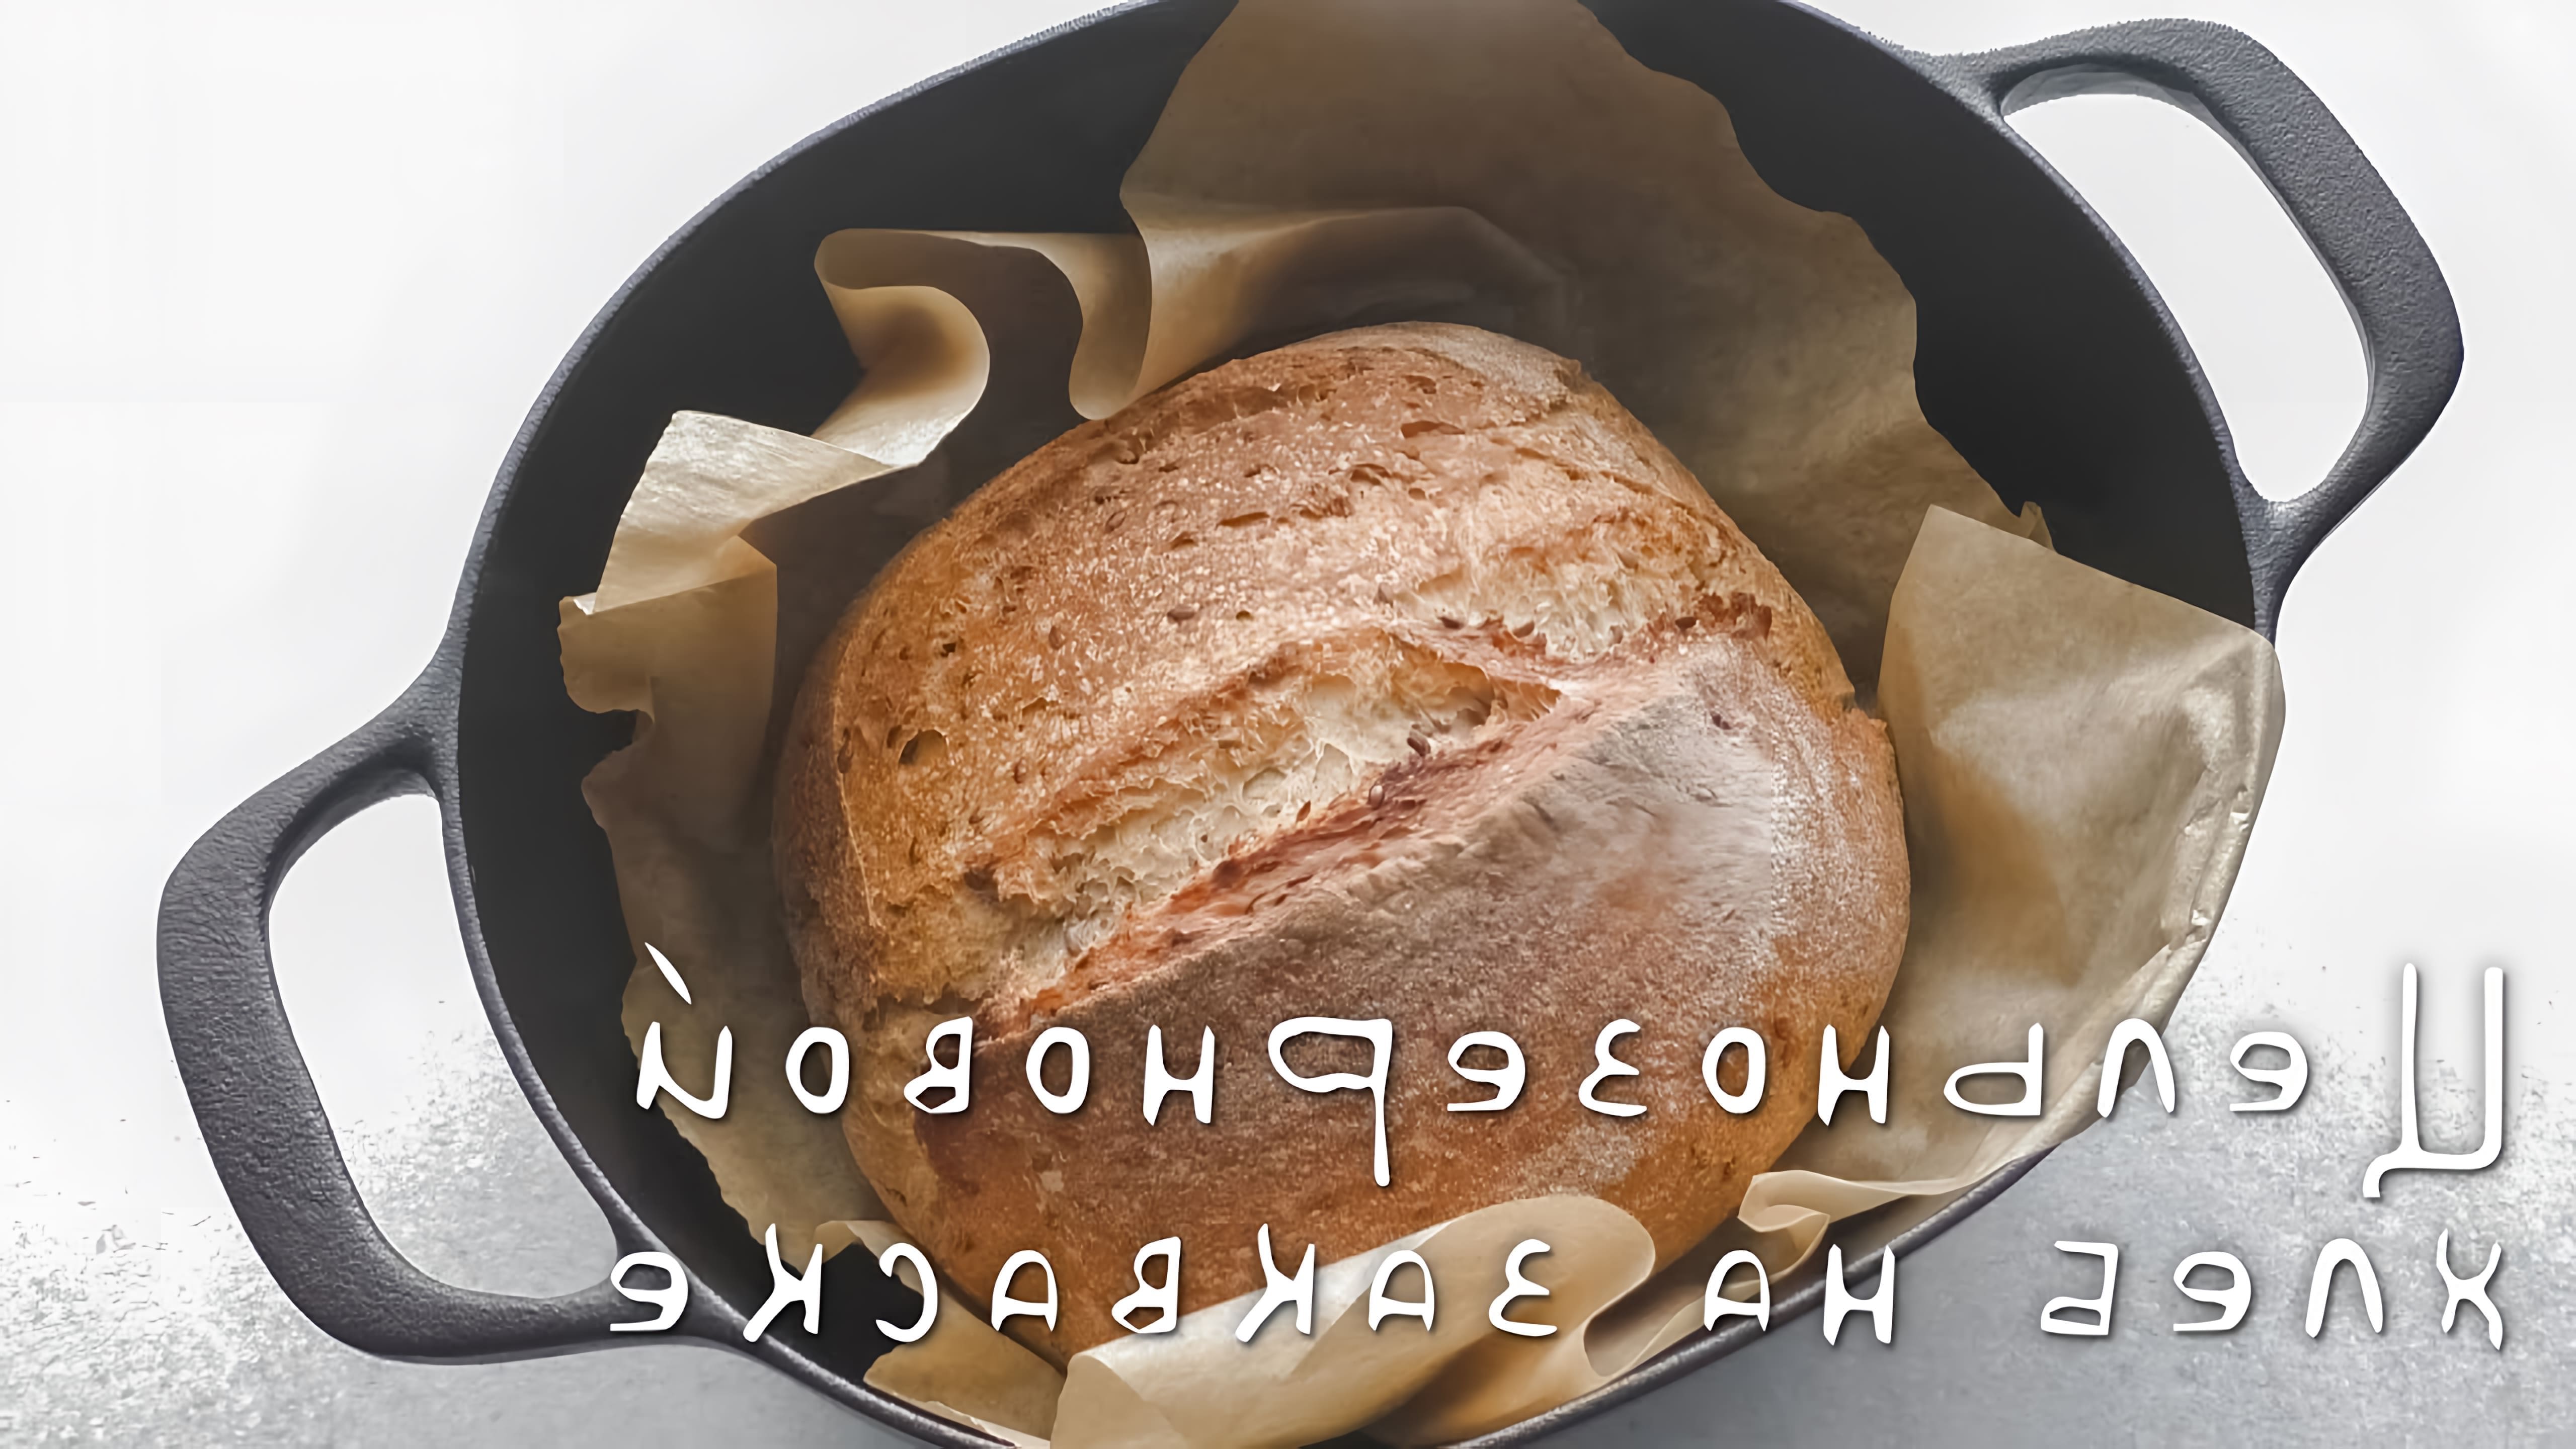 В этом видео демонстрируется процесс приготовления цельнозернового хлеба на закваске с семенами льна